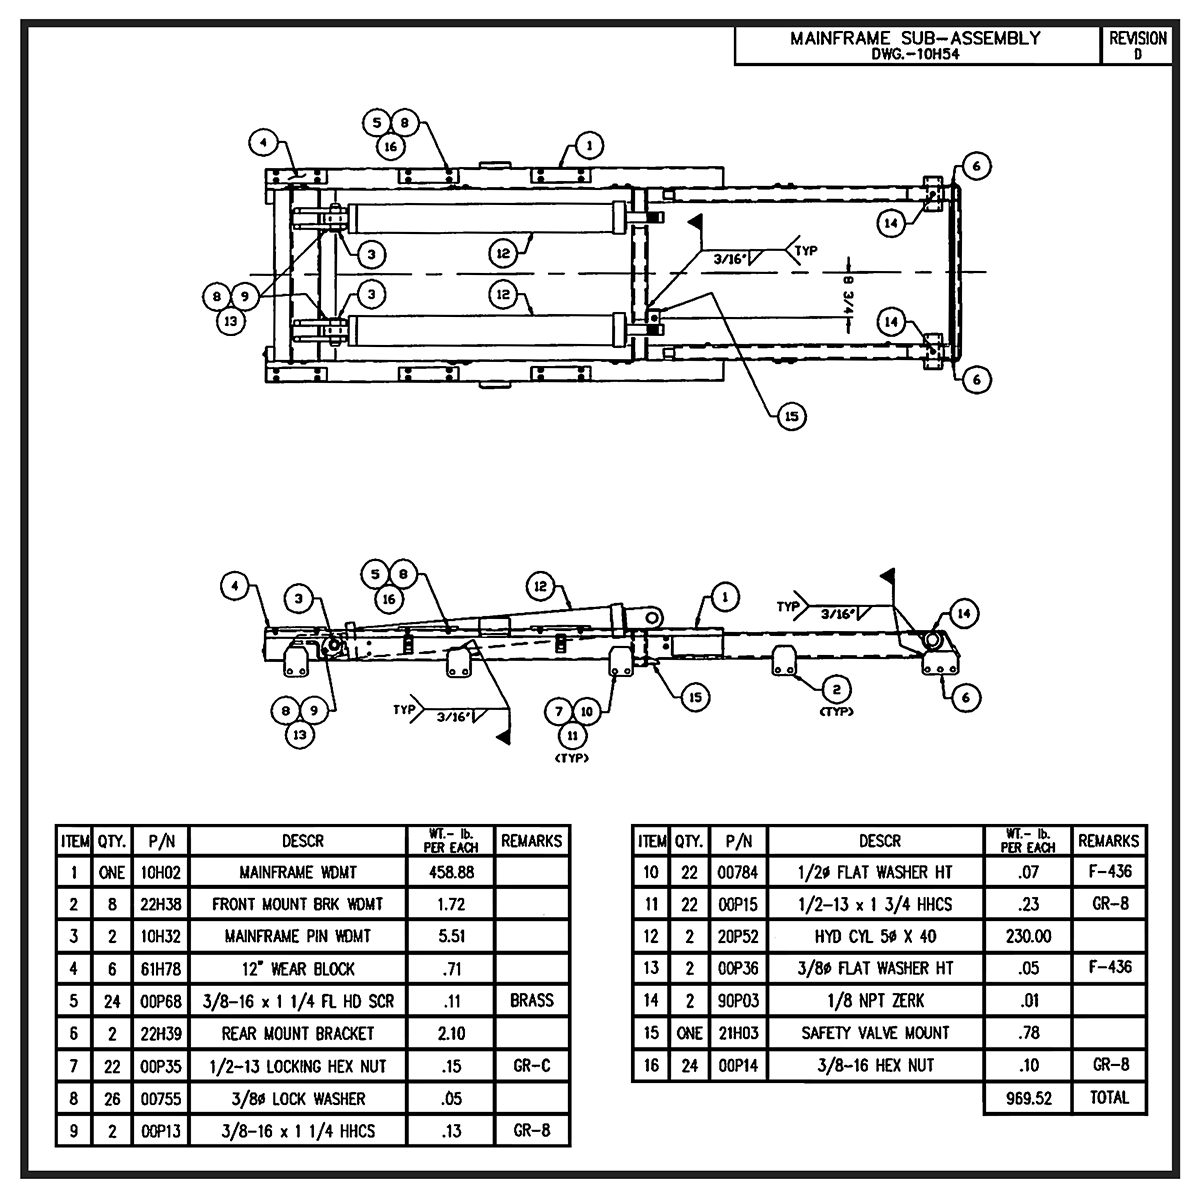 Swaploader SL-125 Mainframe Sub-Assembly Diagram